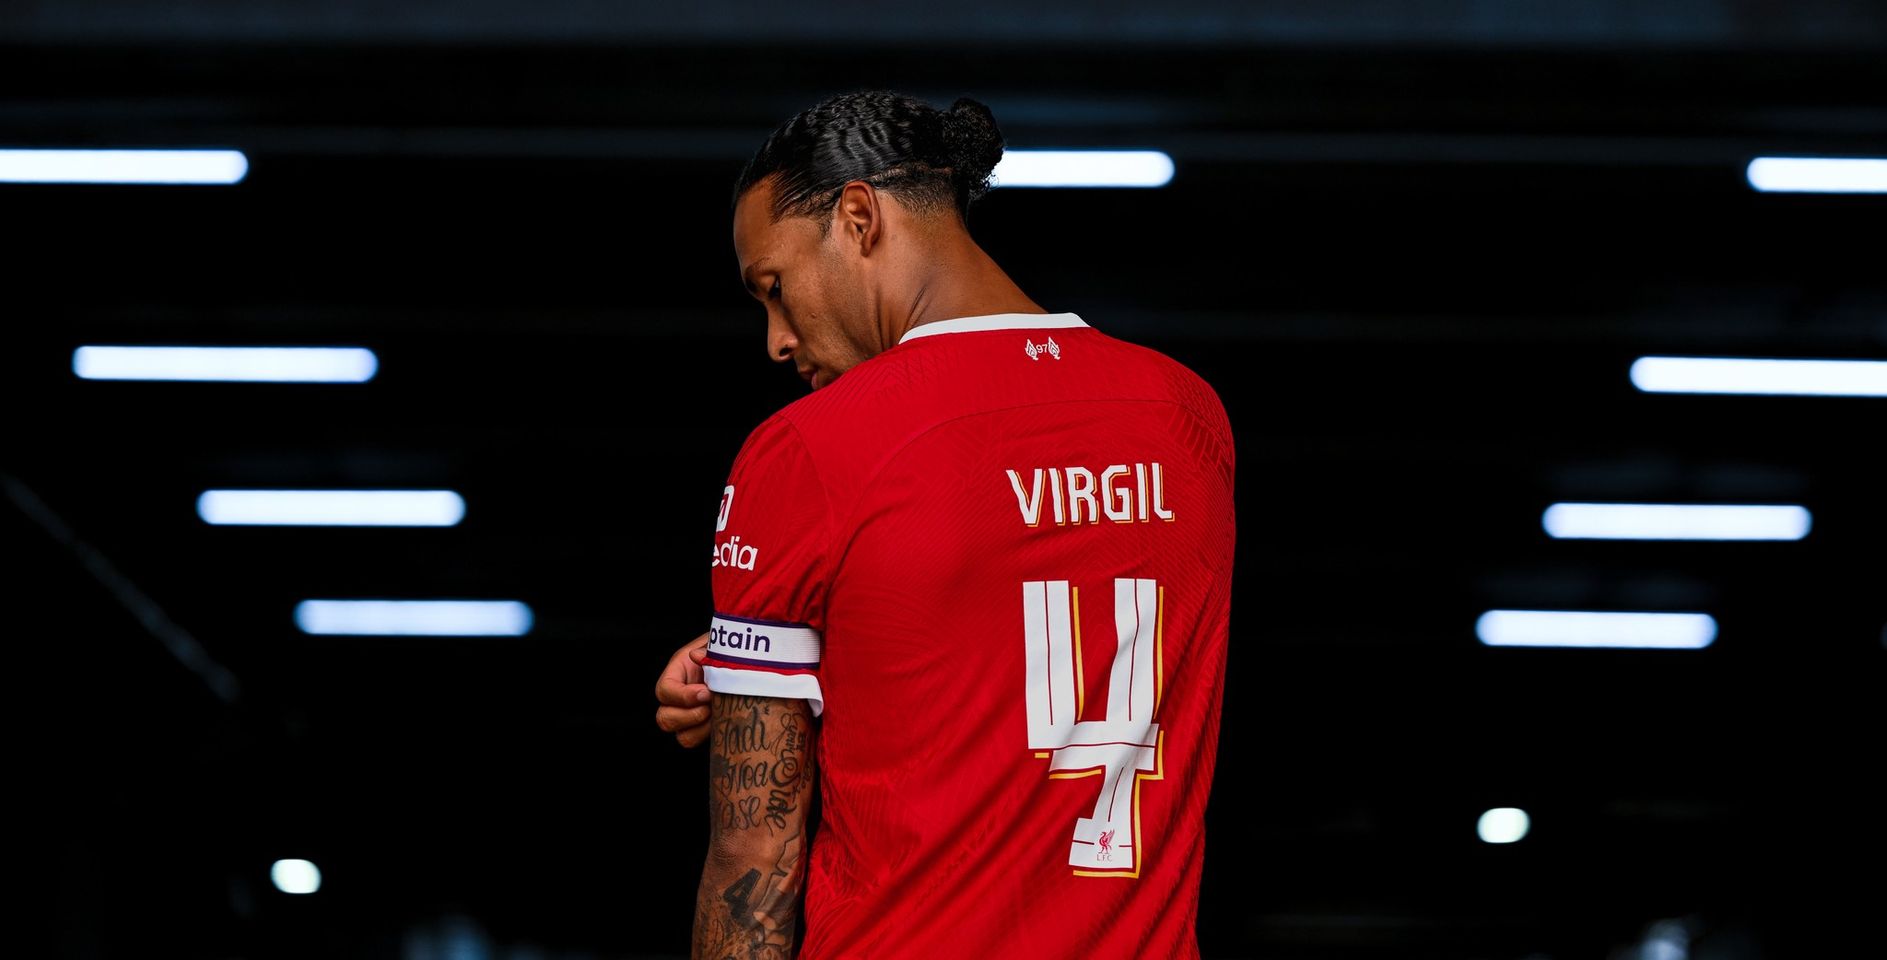 Captain Brick wall: Virgil van Dijk reacts to being Liverpool captain